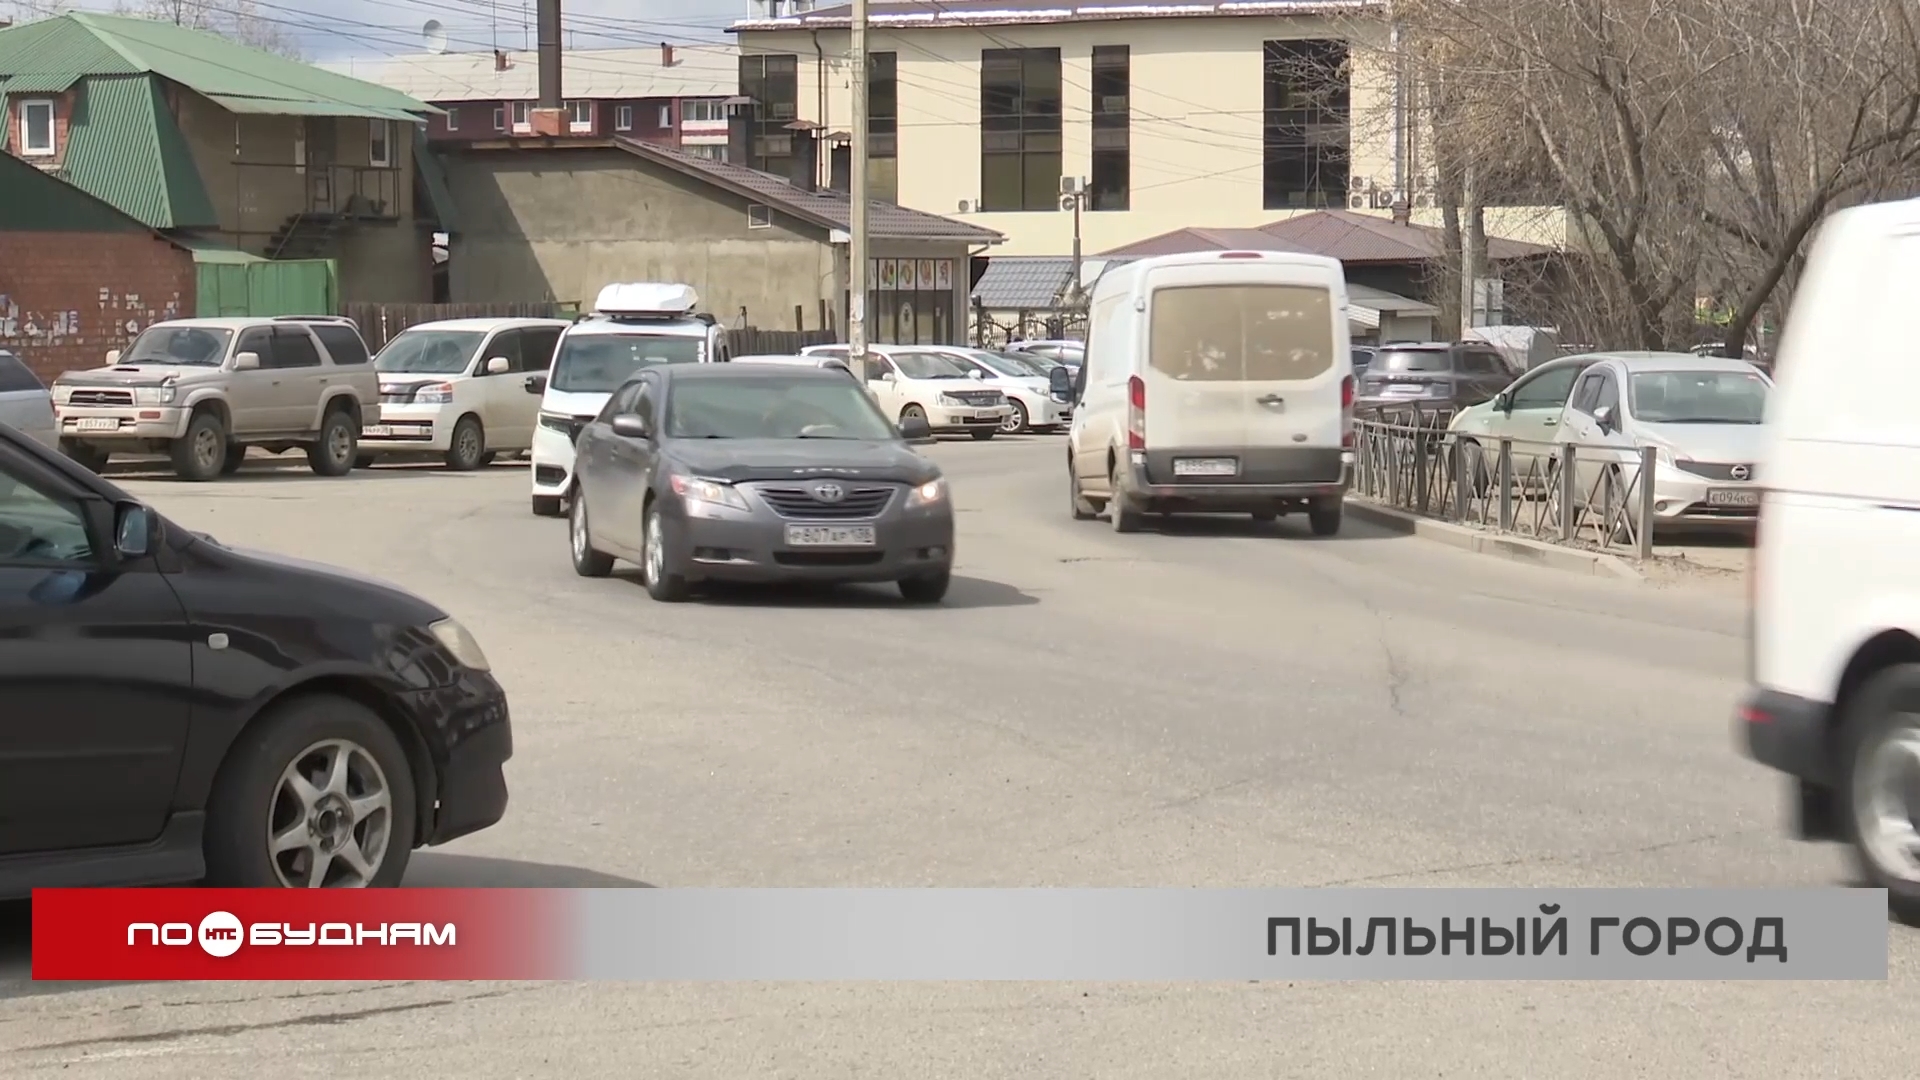 Вы спросили - мы ответили: как в Иркутске планируют бороться с пылью на улицах?